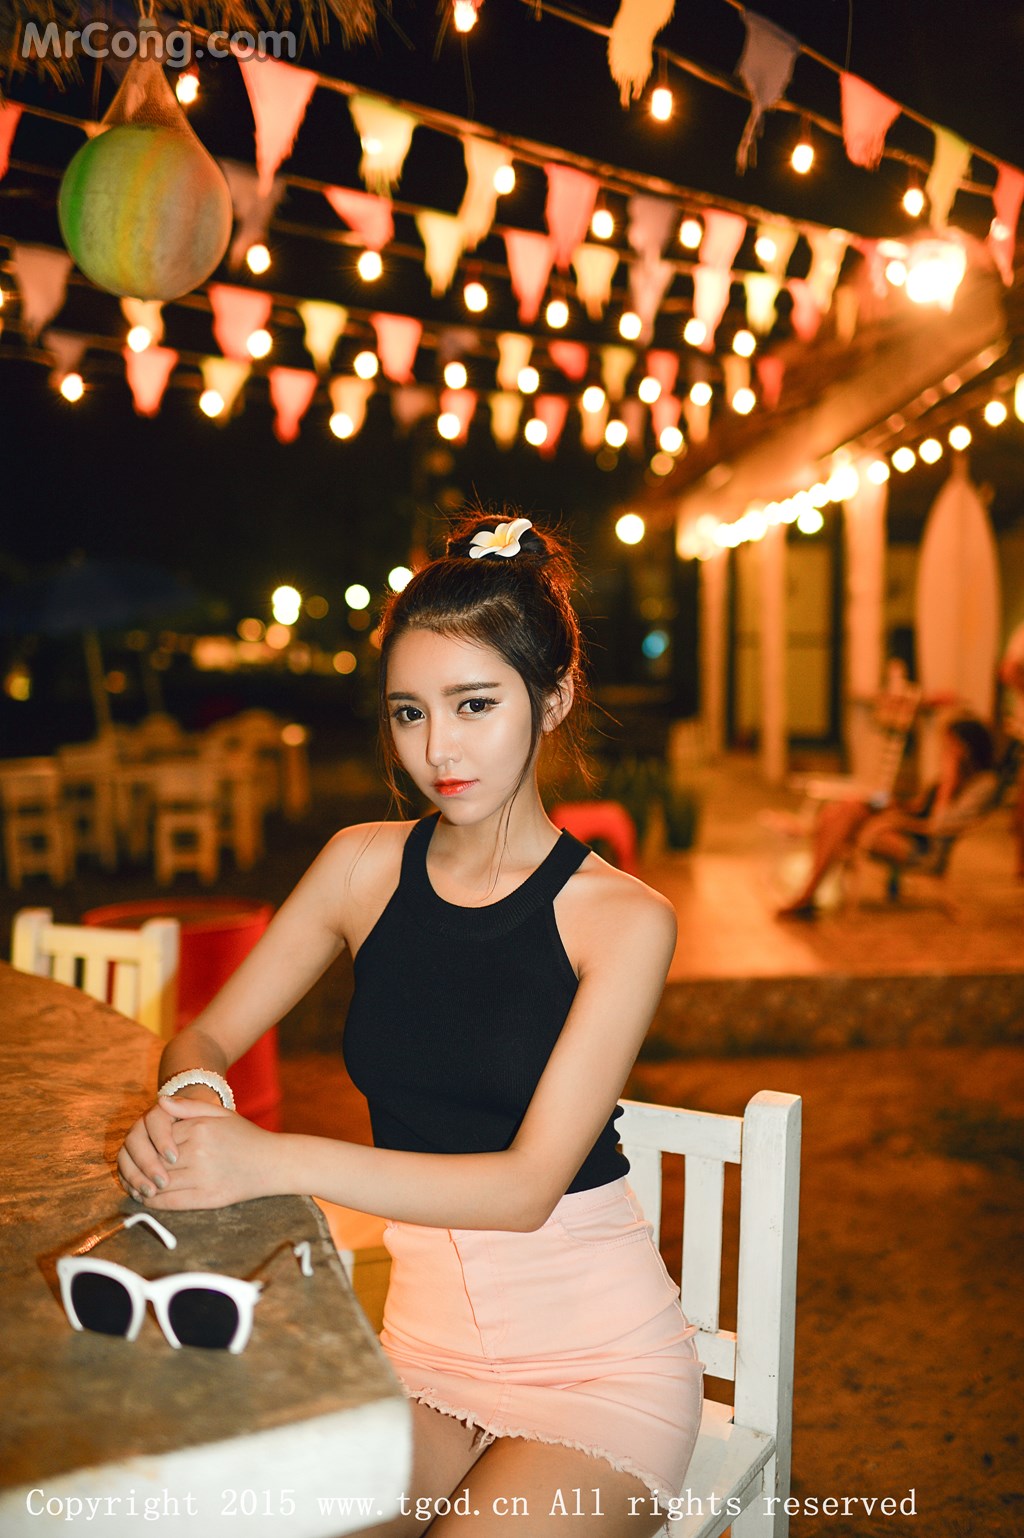 TGOD 2015-11-28: Model Xu Yan Xin (徐妍馨 Mandy) (42 photos)